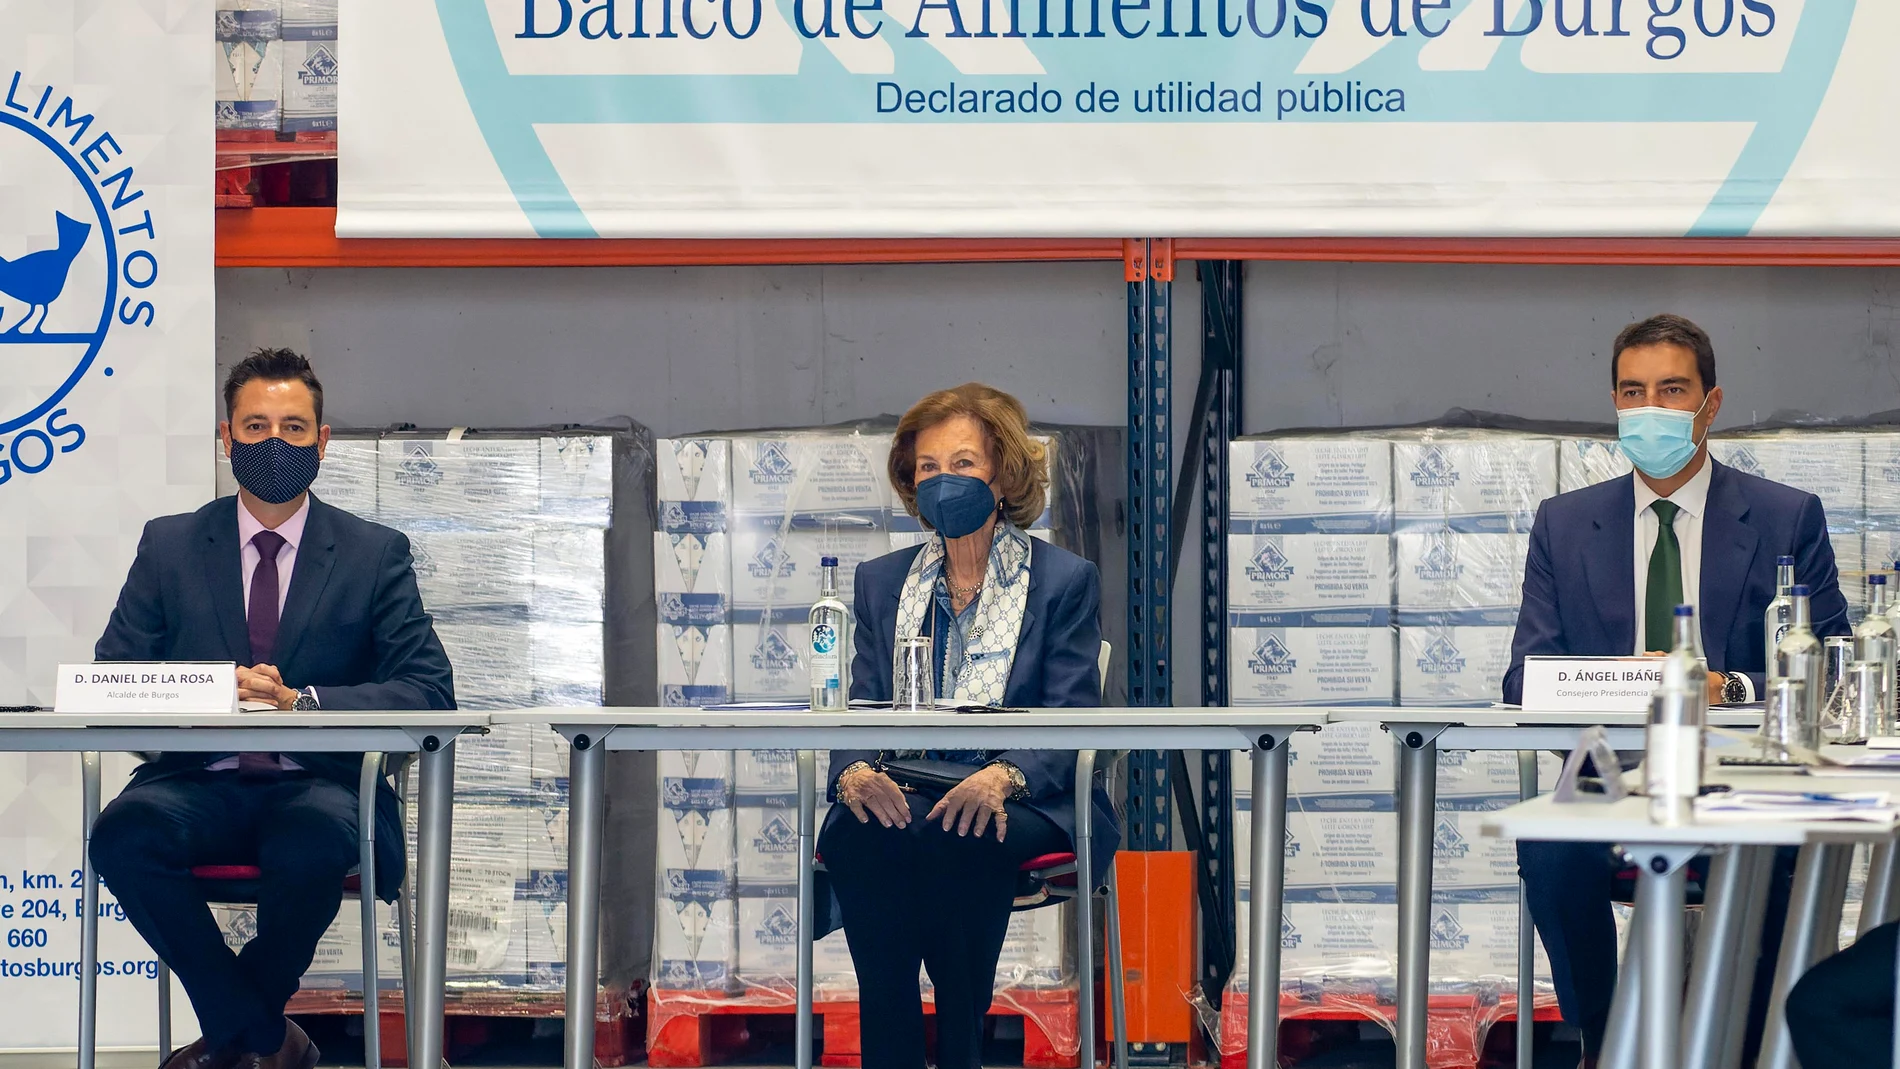 La reina Sofía visita el Banco de Alimentos de Burgos. A las 12.30 horas llegada y reunión con autoridades y responsables de la Asociación Banco de Alimentos de Burgos, y posteriormente, a las 13 horas visita las instalaciones y mantiene un encuentro con los voluntarios